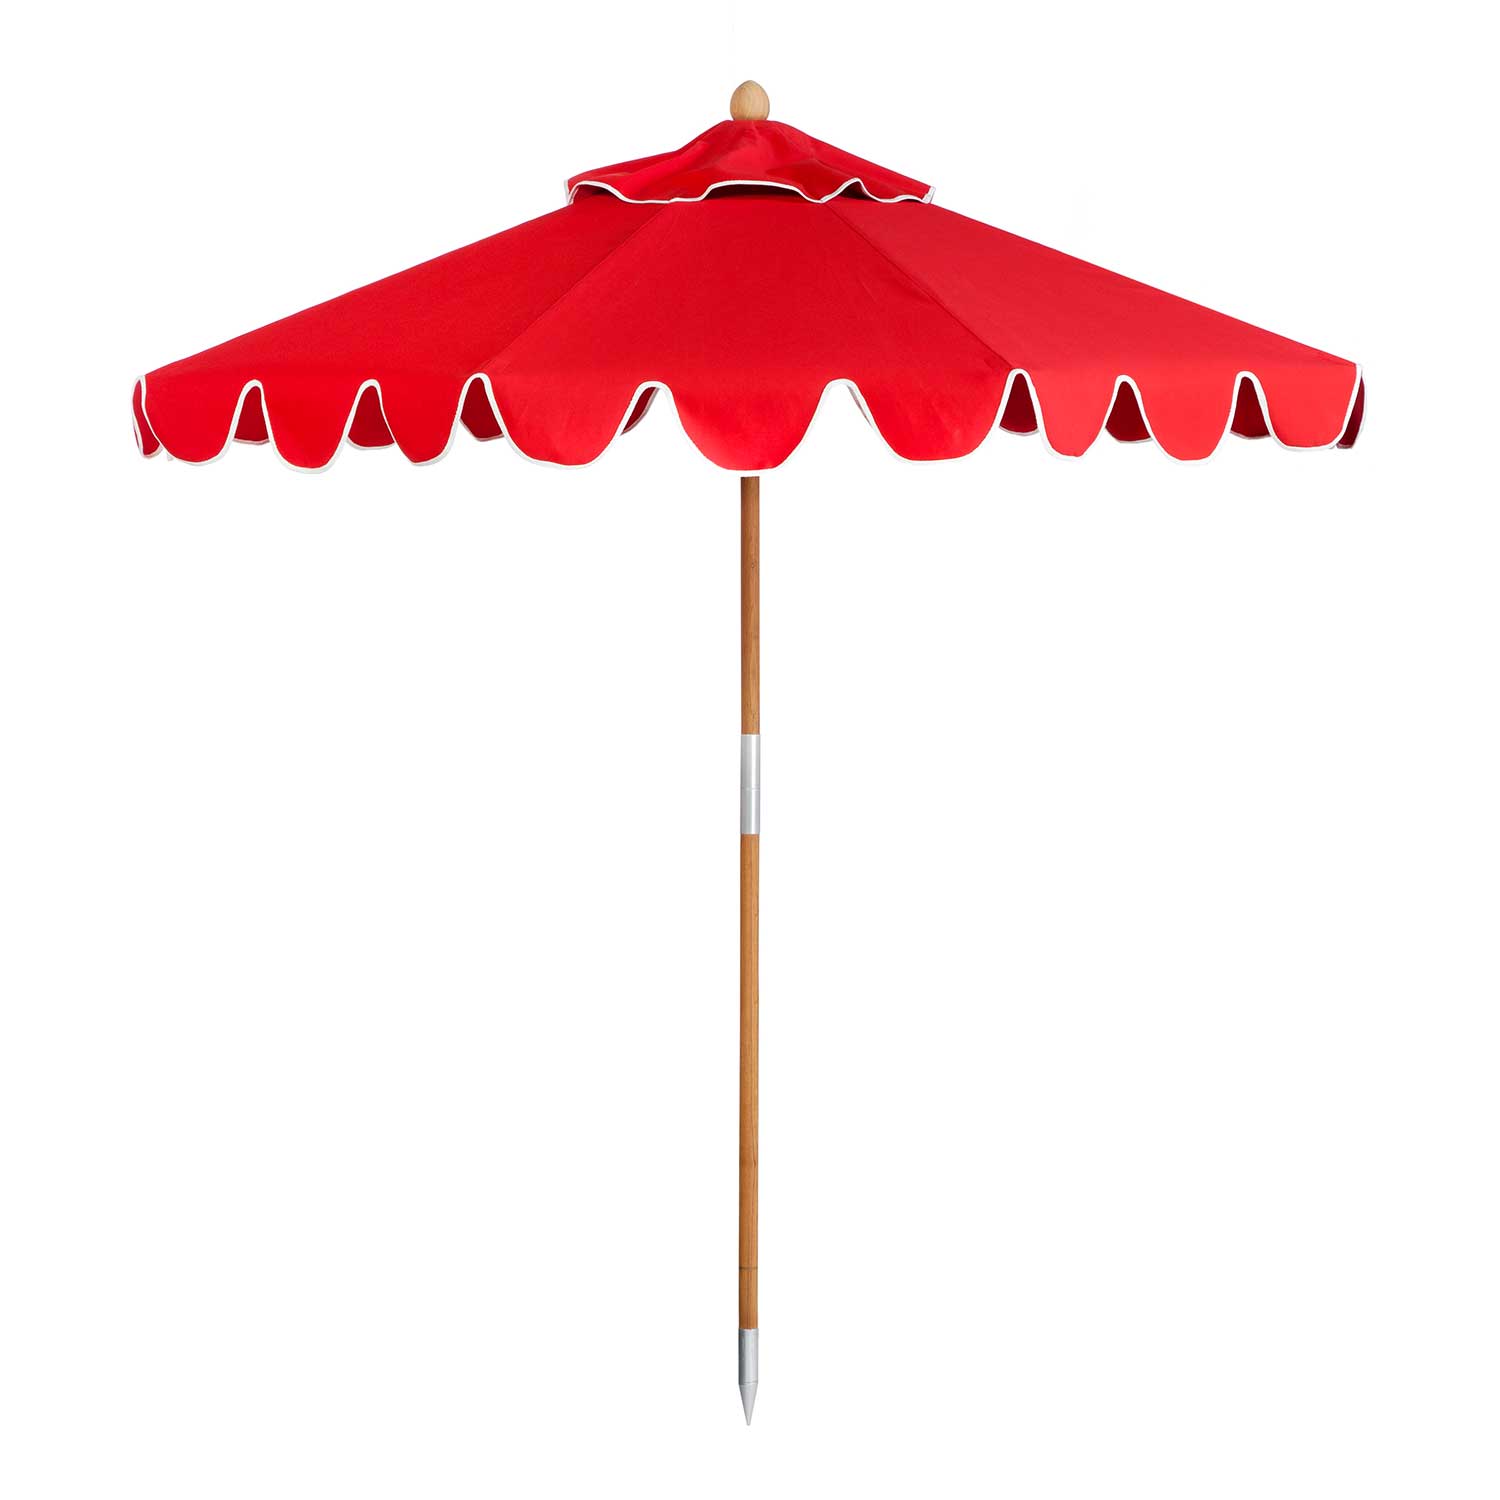 Tango Red Umbrella Image